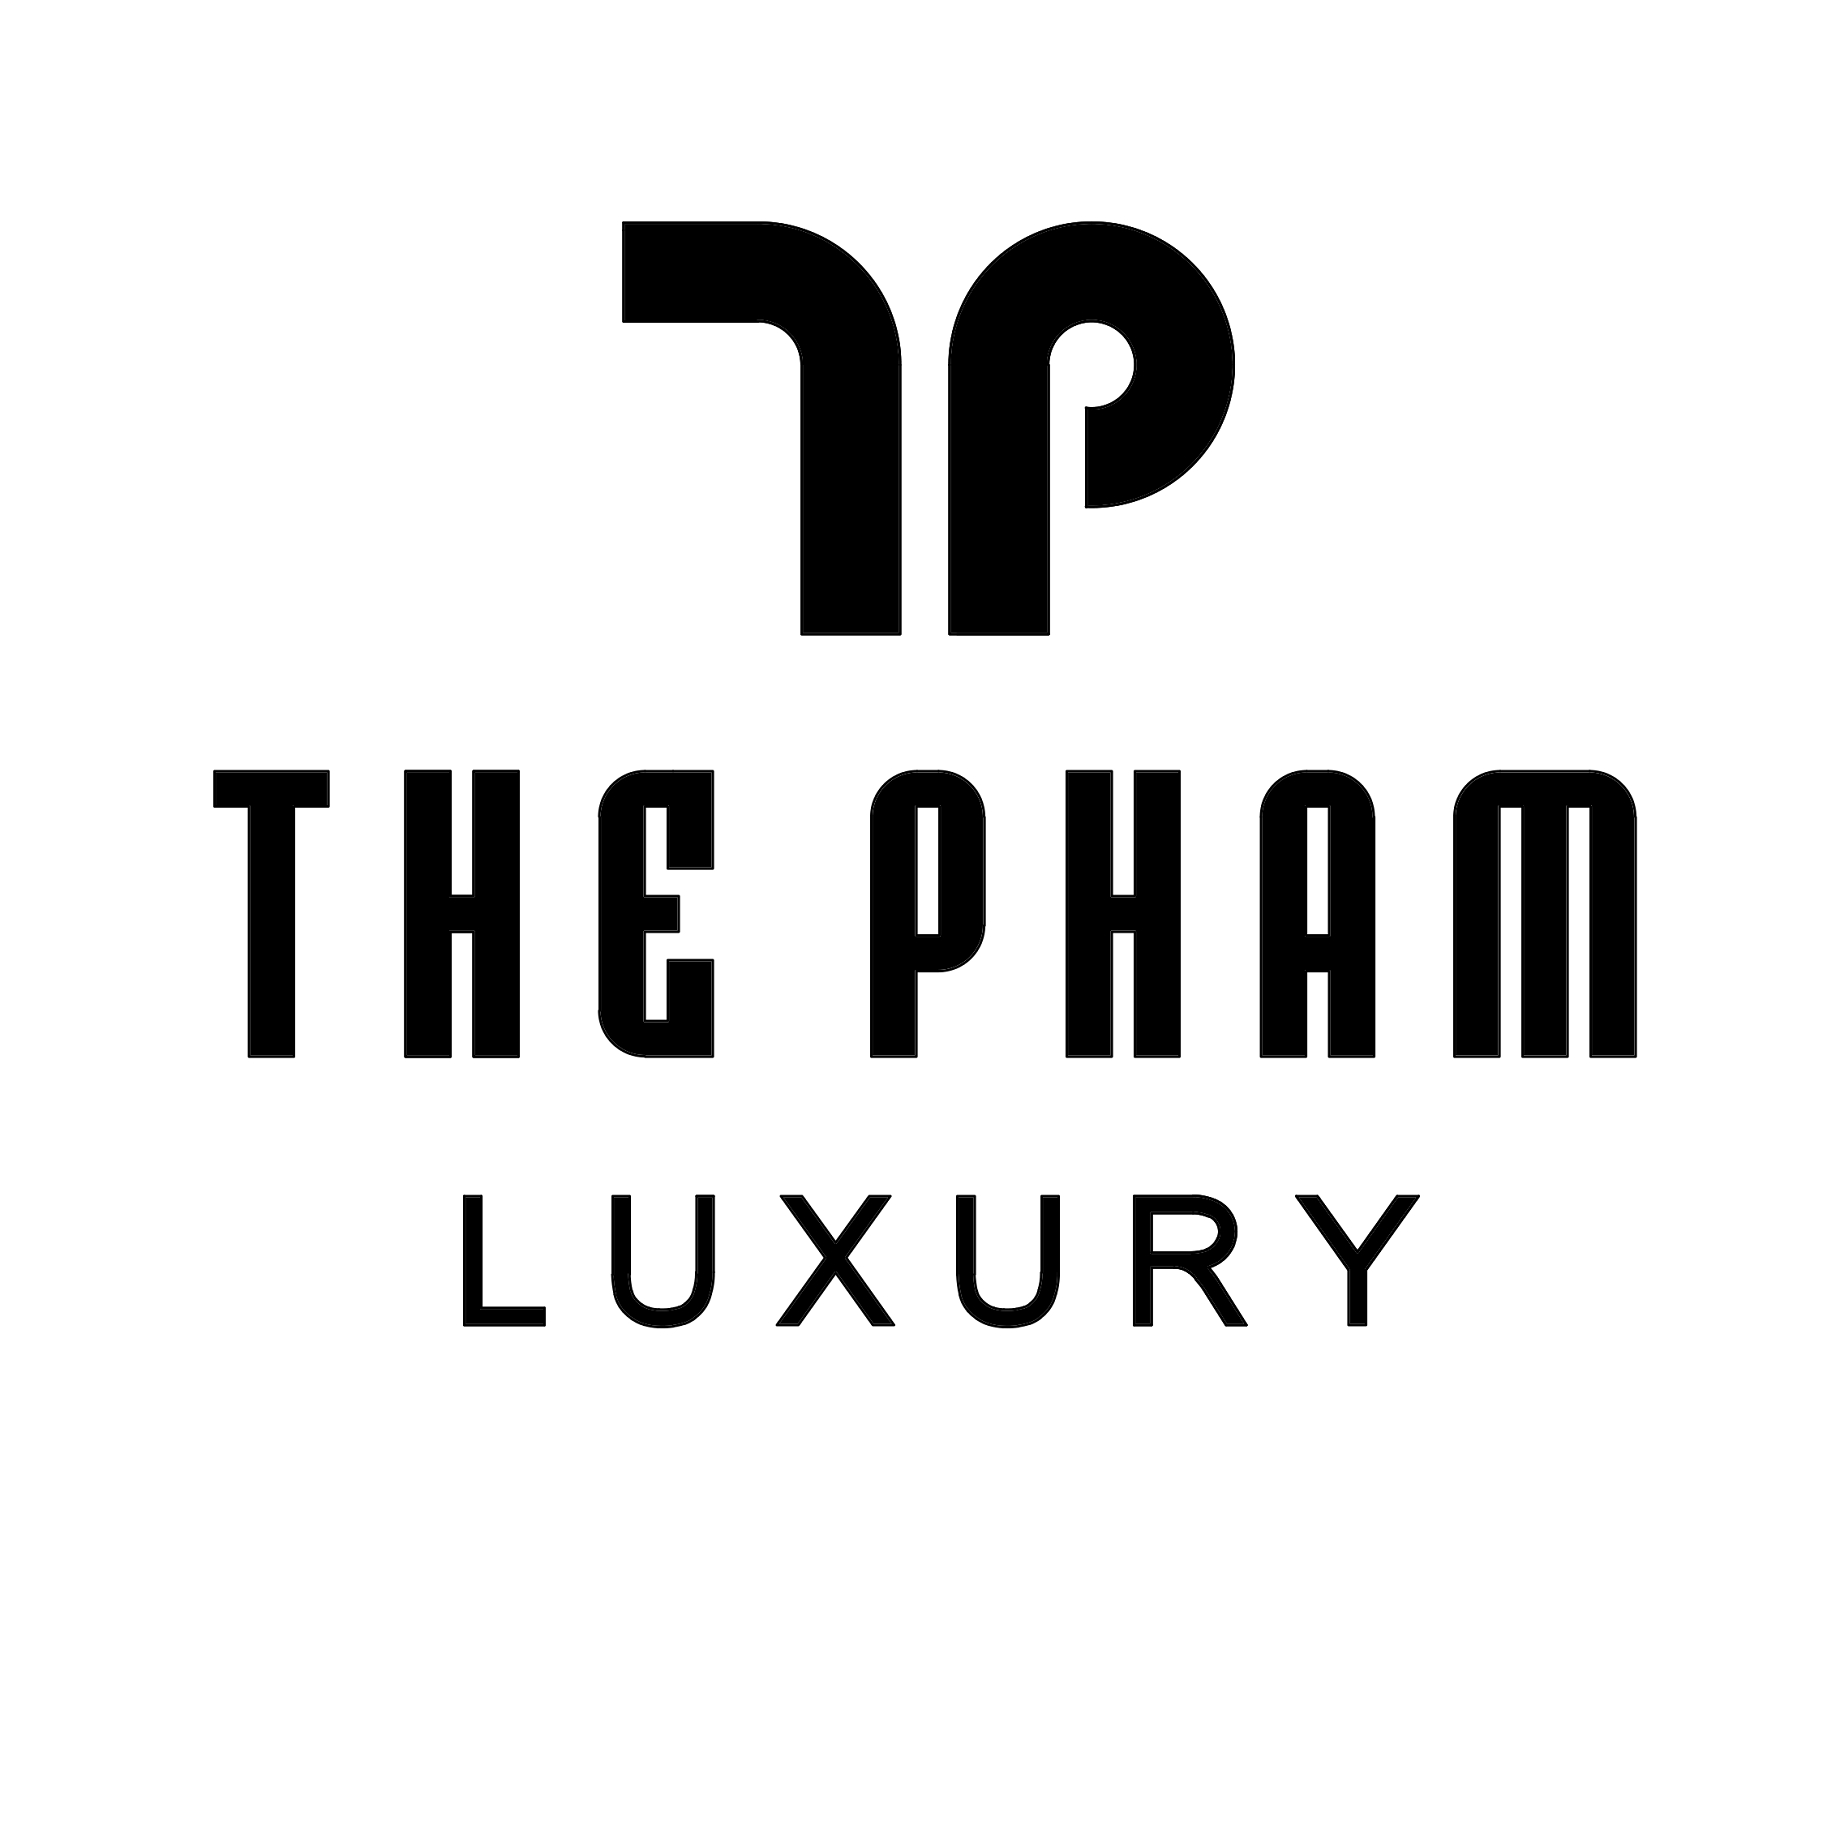 THEPHAM luxuy